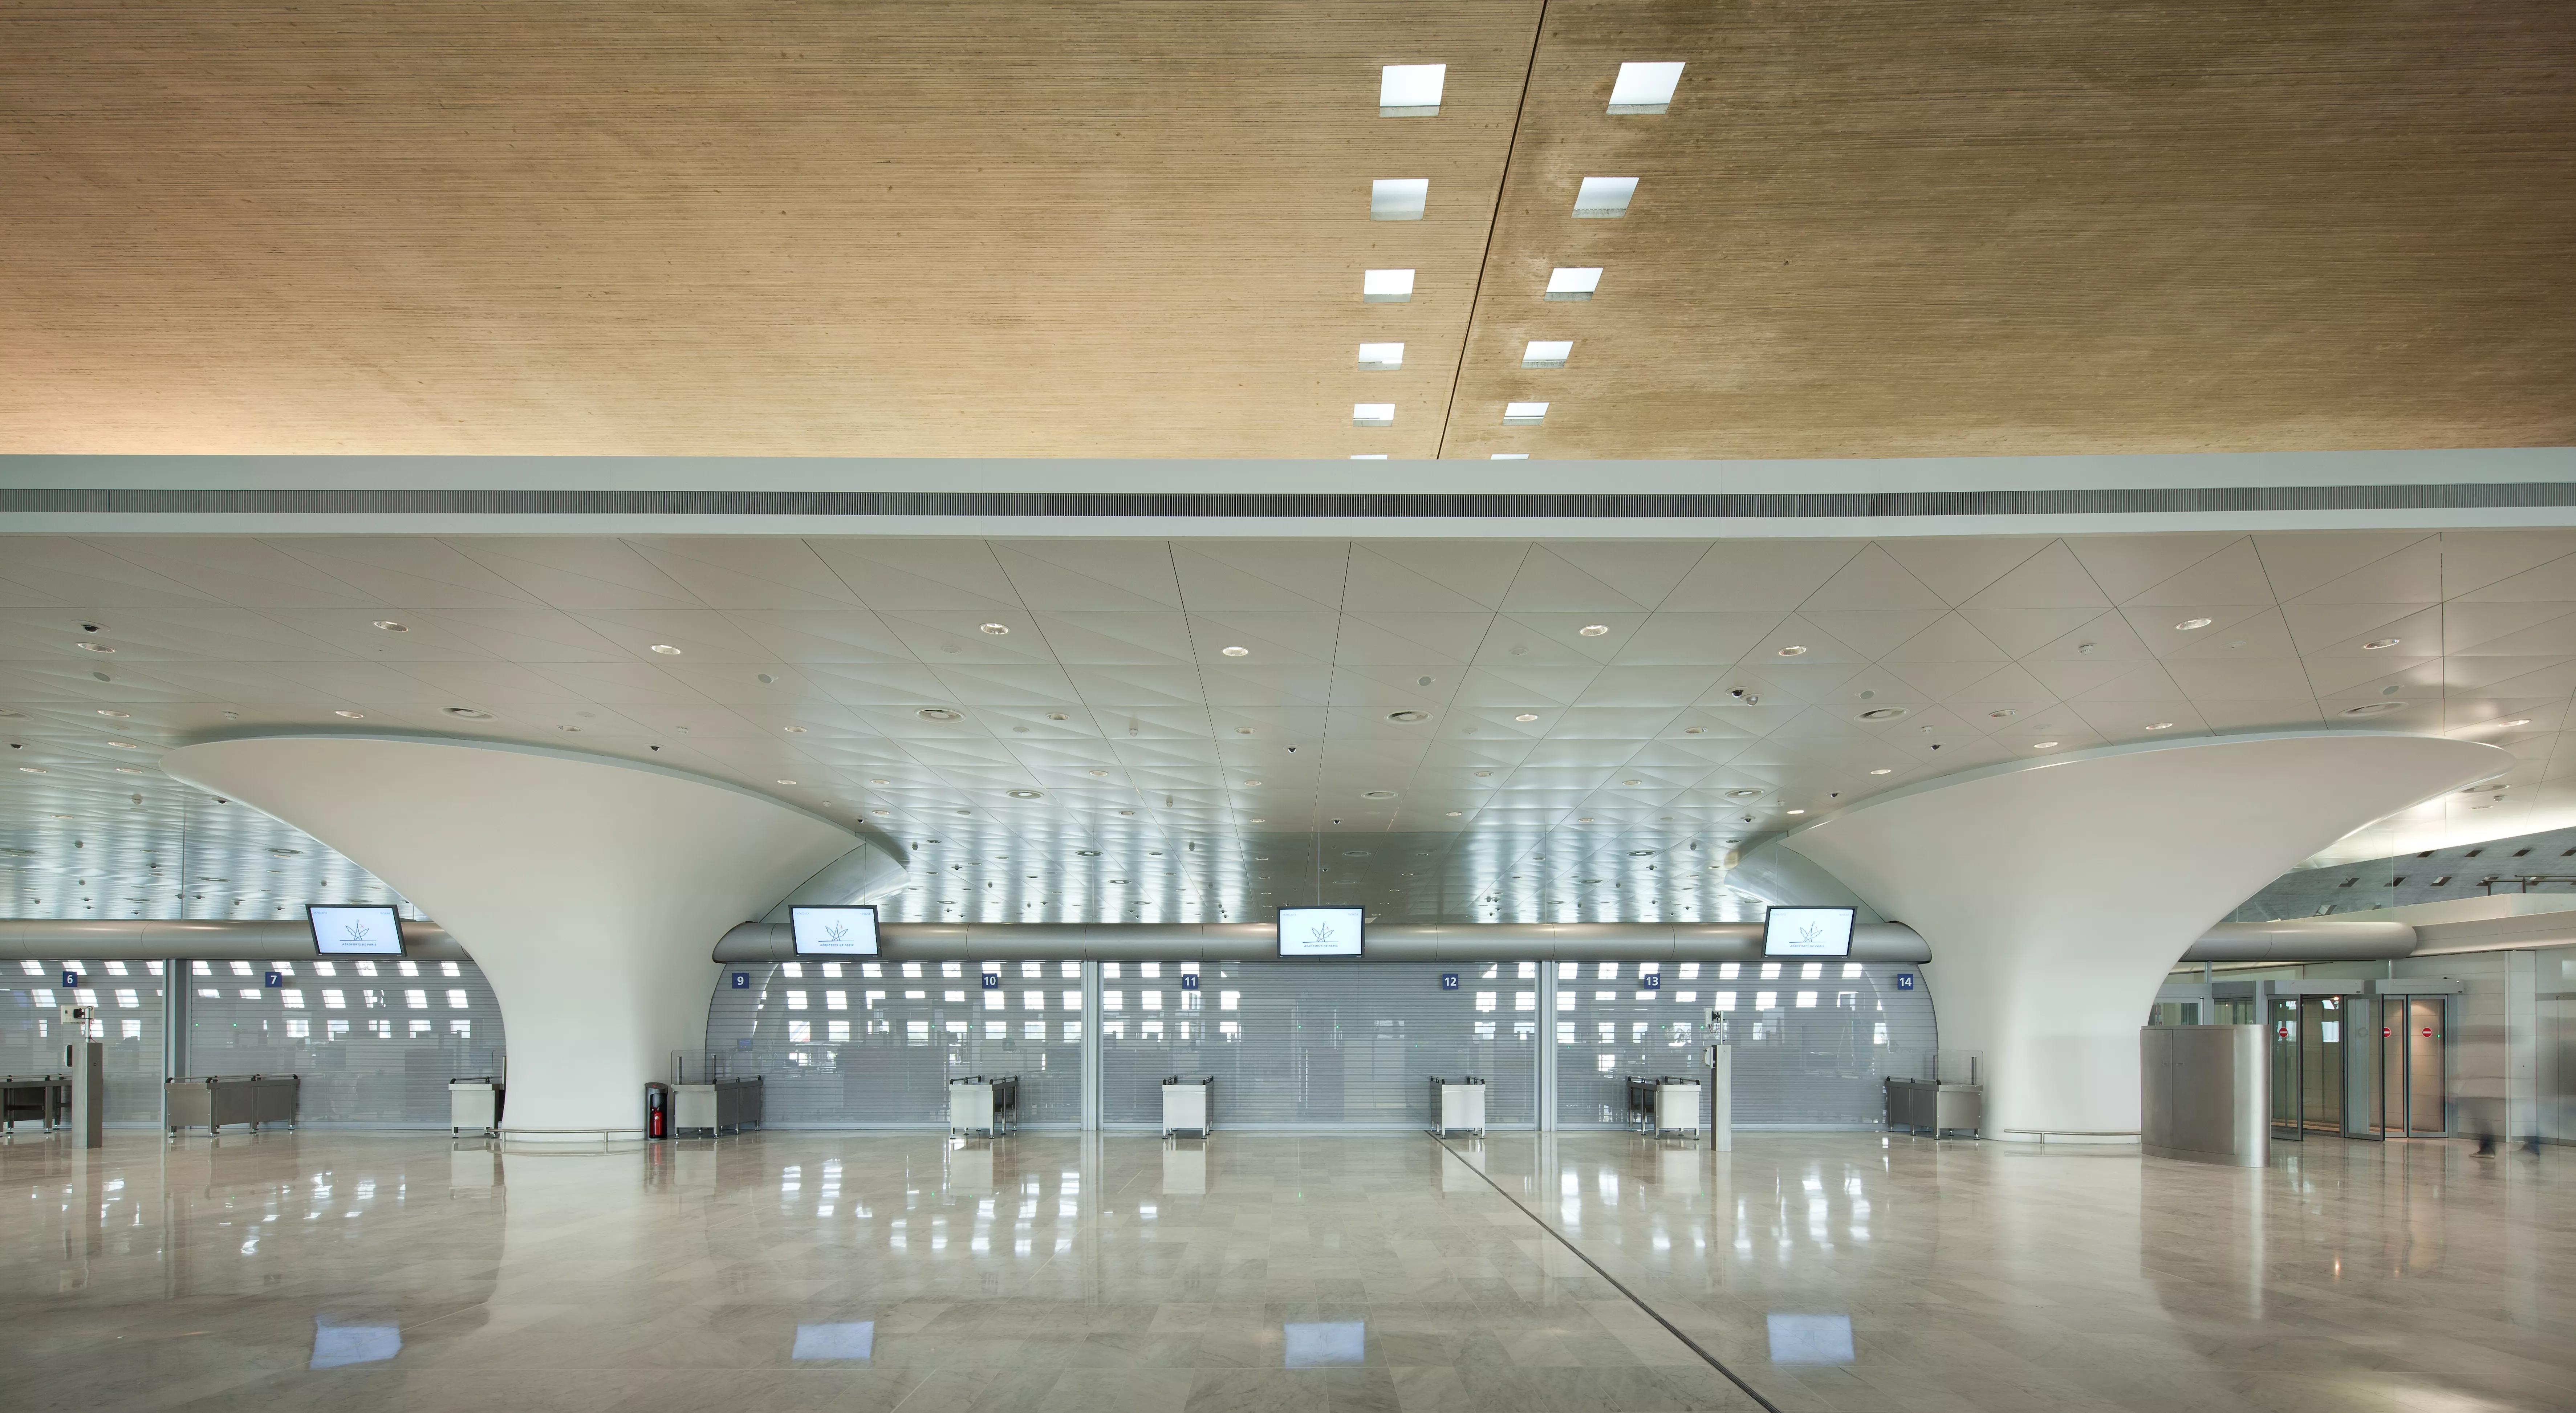 Charles de Gaulle airport in Paris